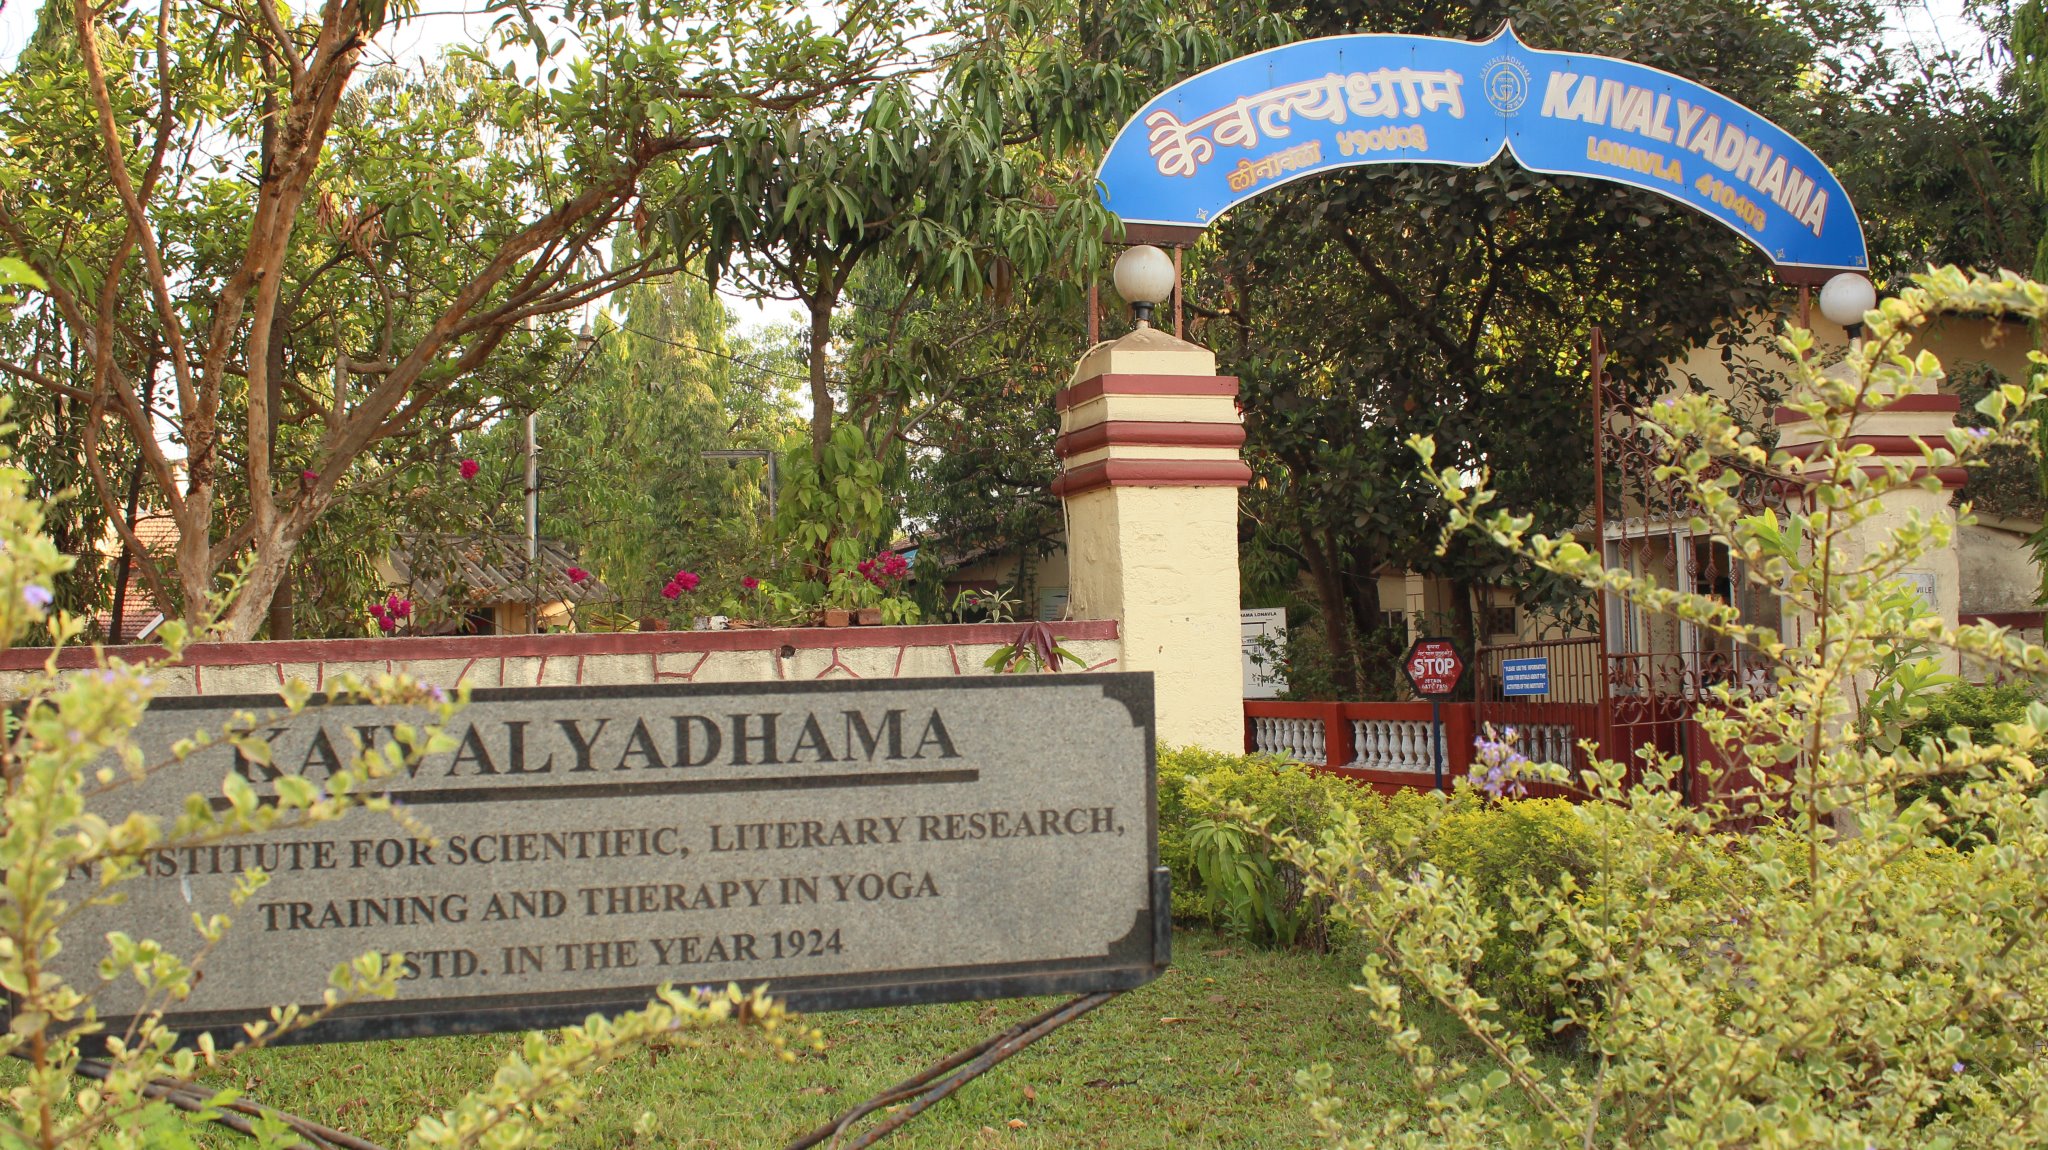 Kaivalya Dham Yoga And Ayurveda Institute Lonavala